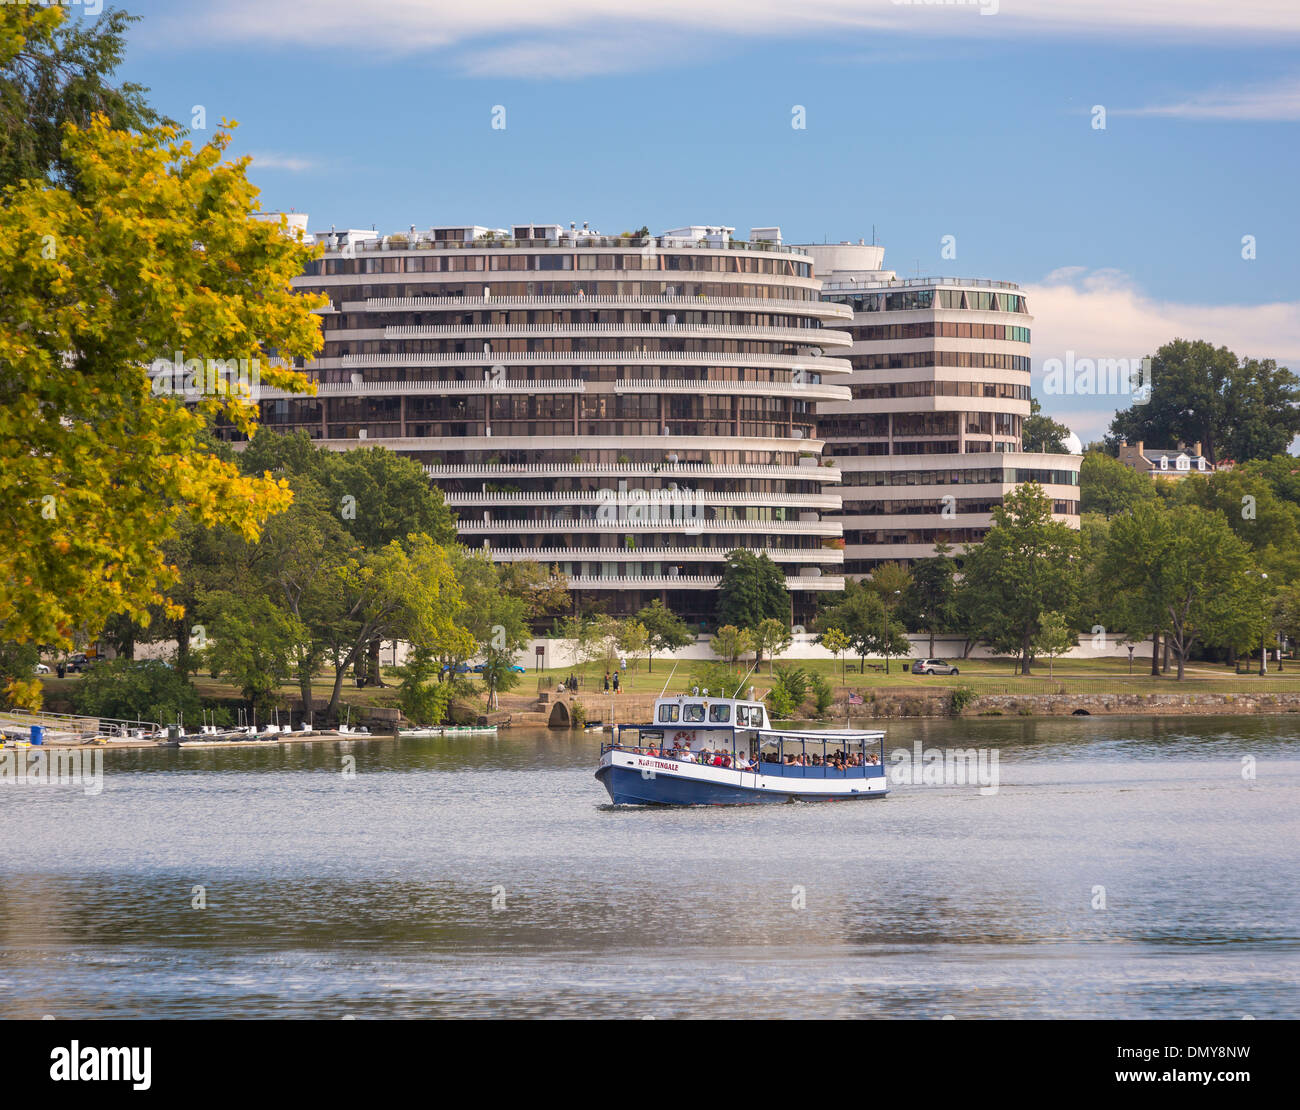 WASHINGTON, DC, USA - Harbour bateau de croisière sur la rivière Potomac Nightingale à Watergate à l'arrière. Banque D'Images